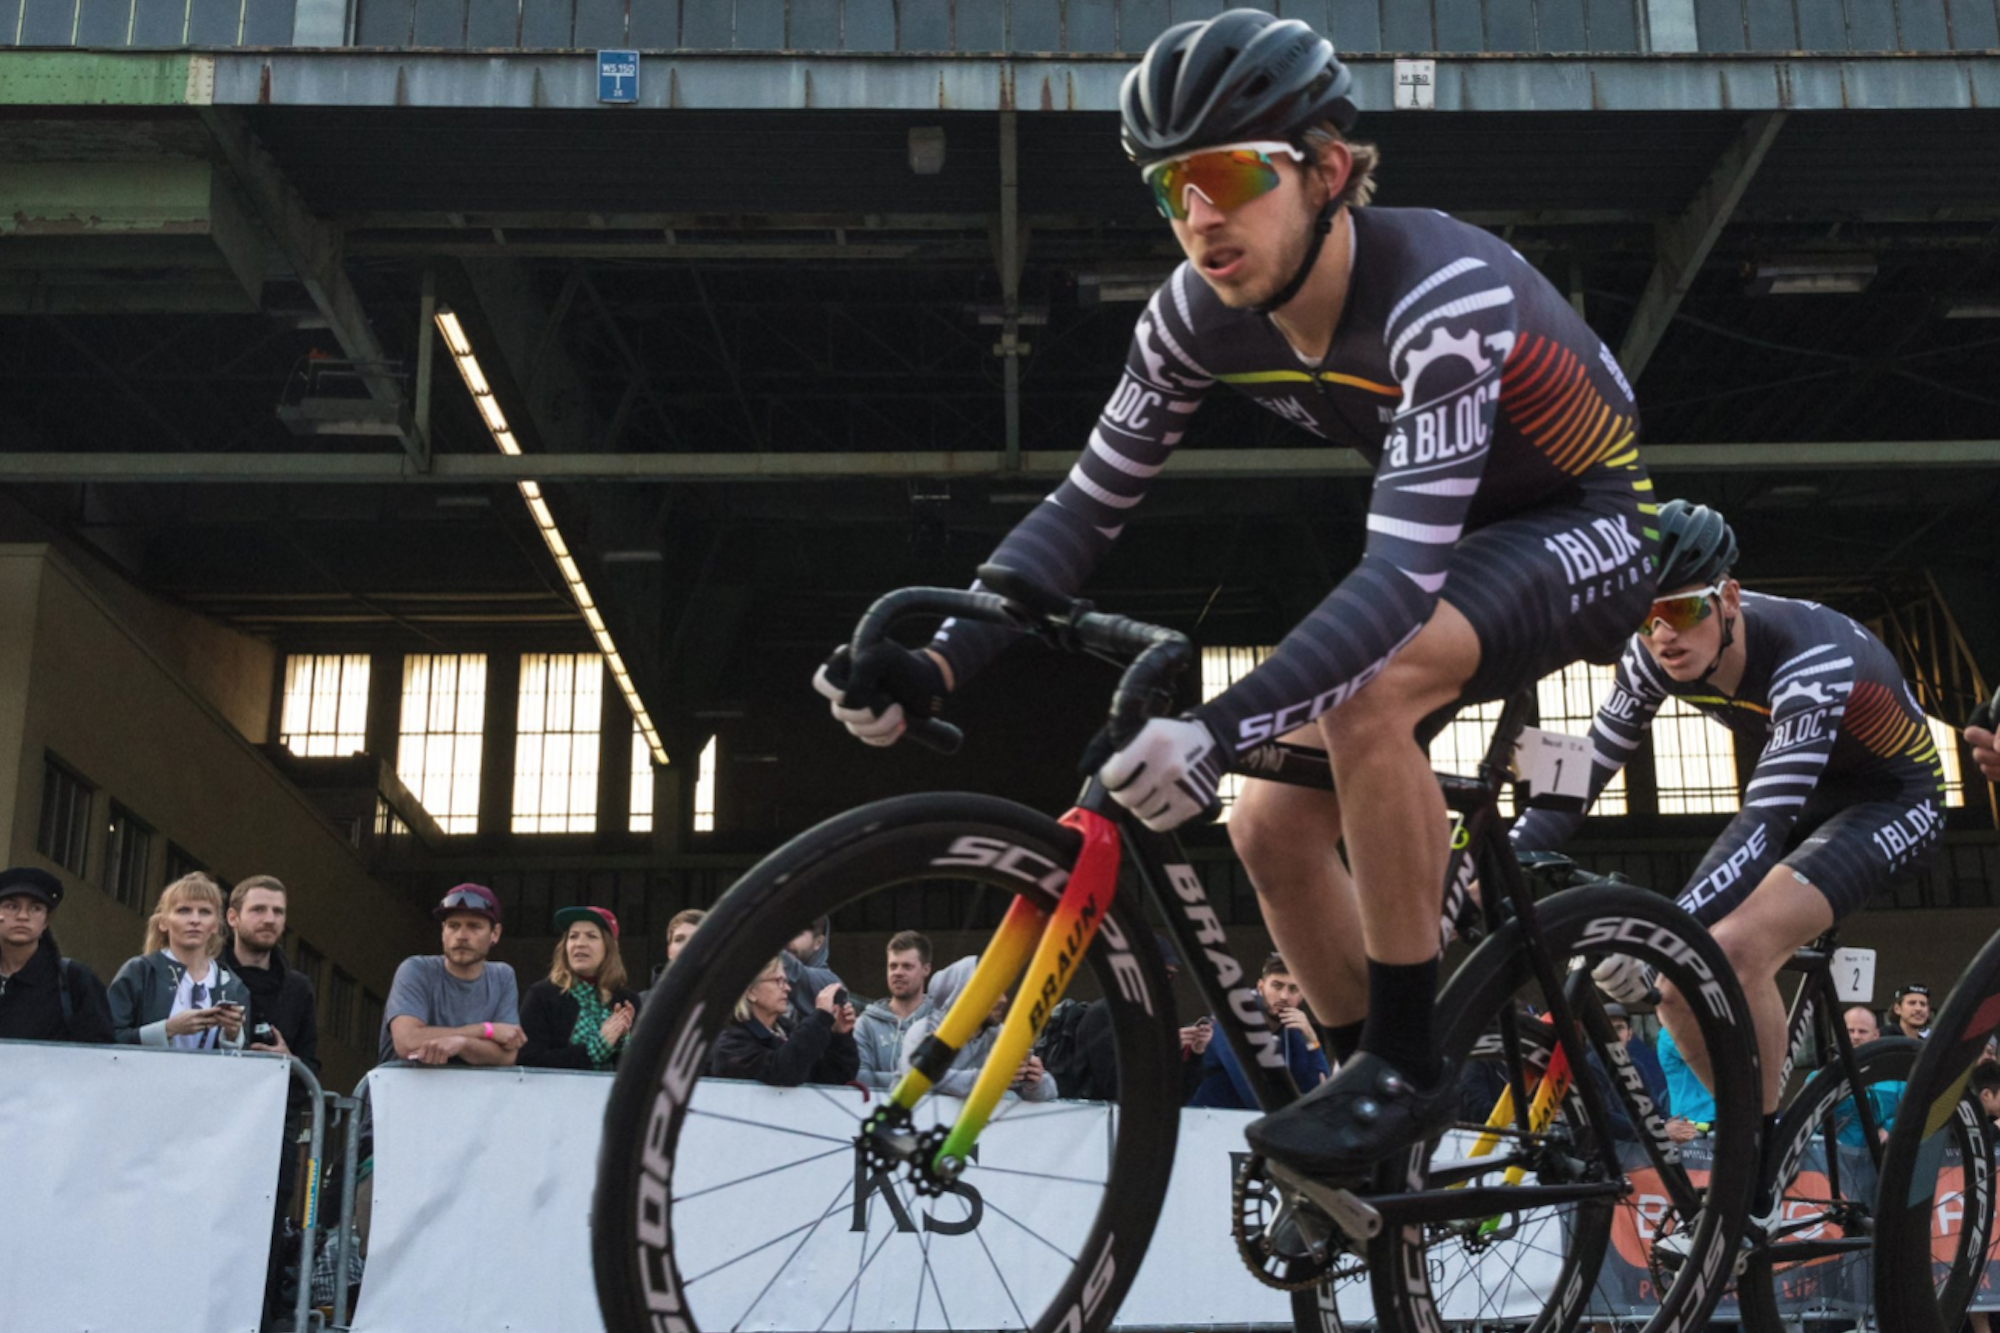 Red Hook winner David van Eerd banned for doping | Cycling Weekly